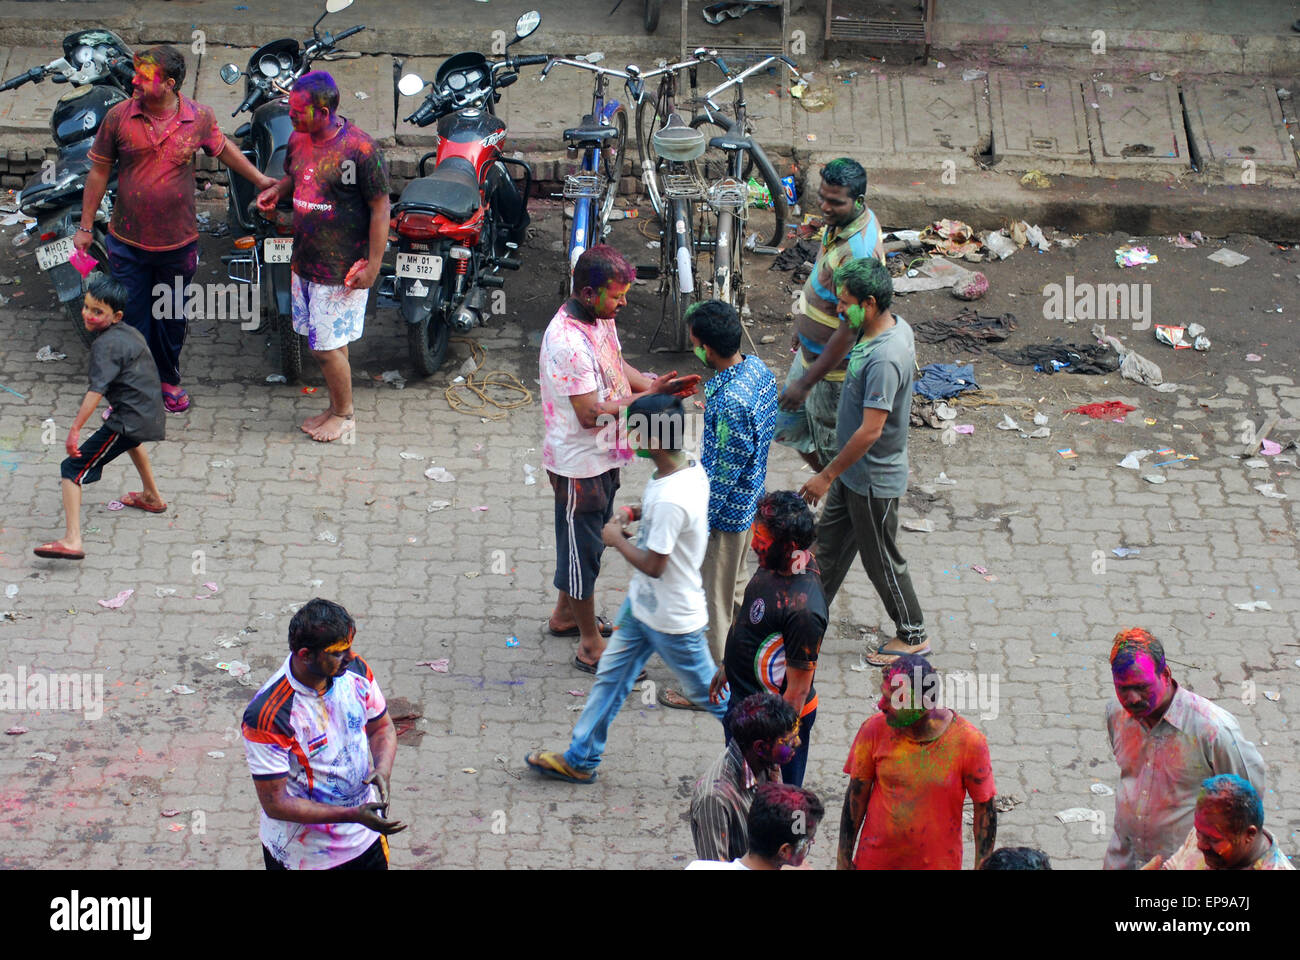 Street celebration during holi, Mumbai, India Stock Photo